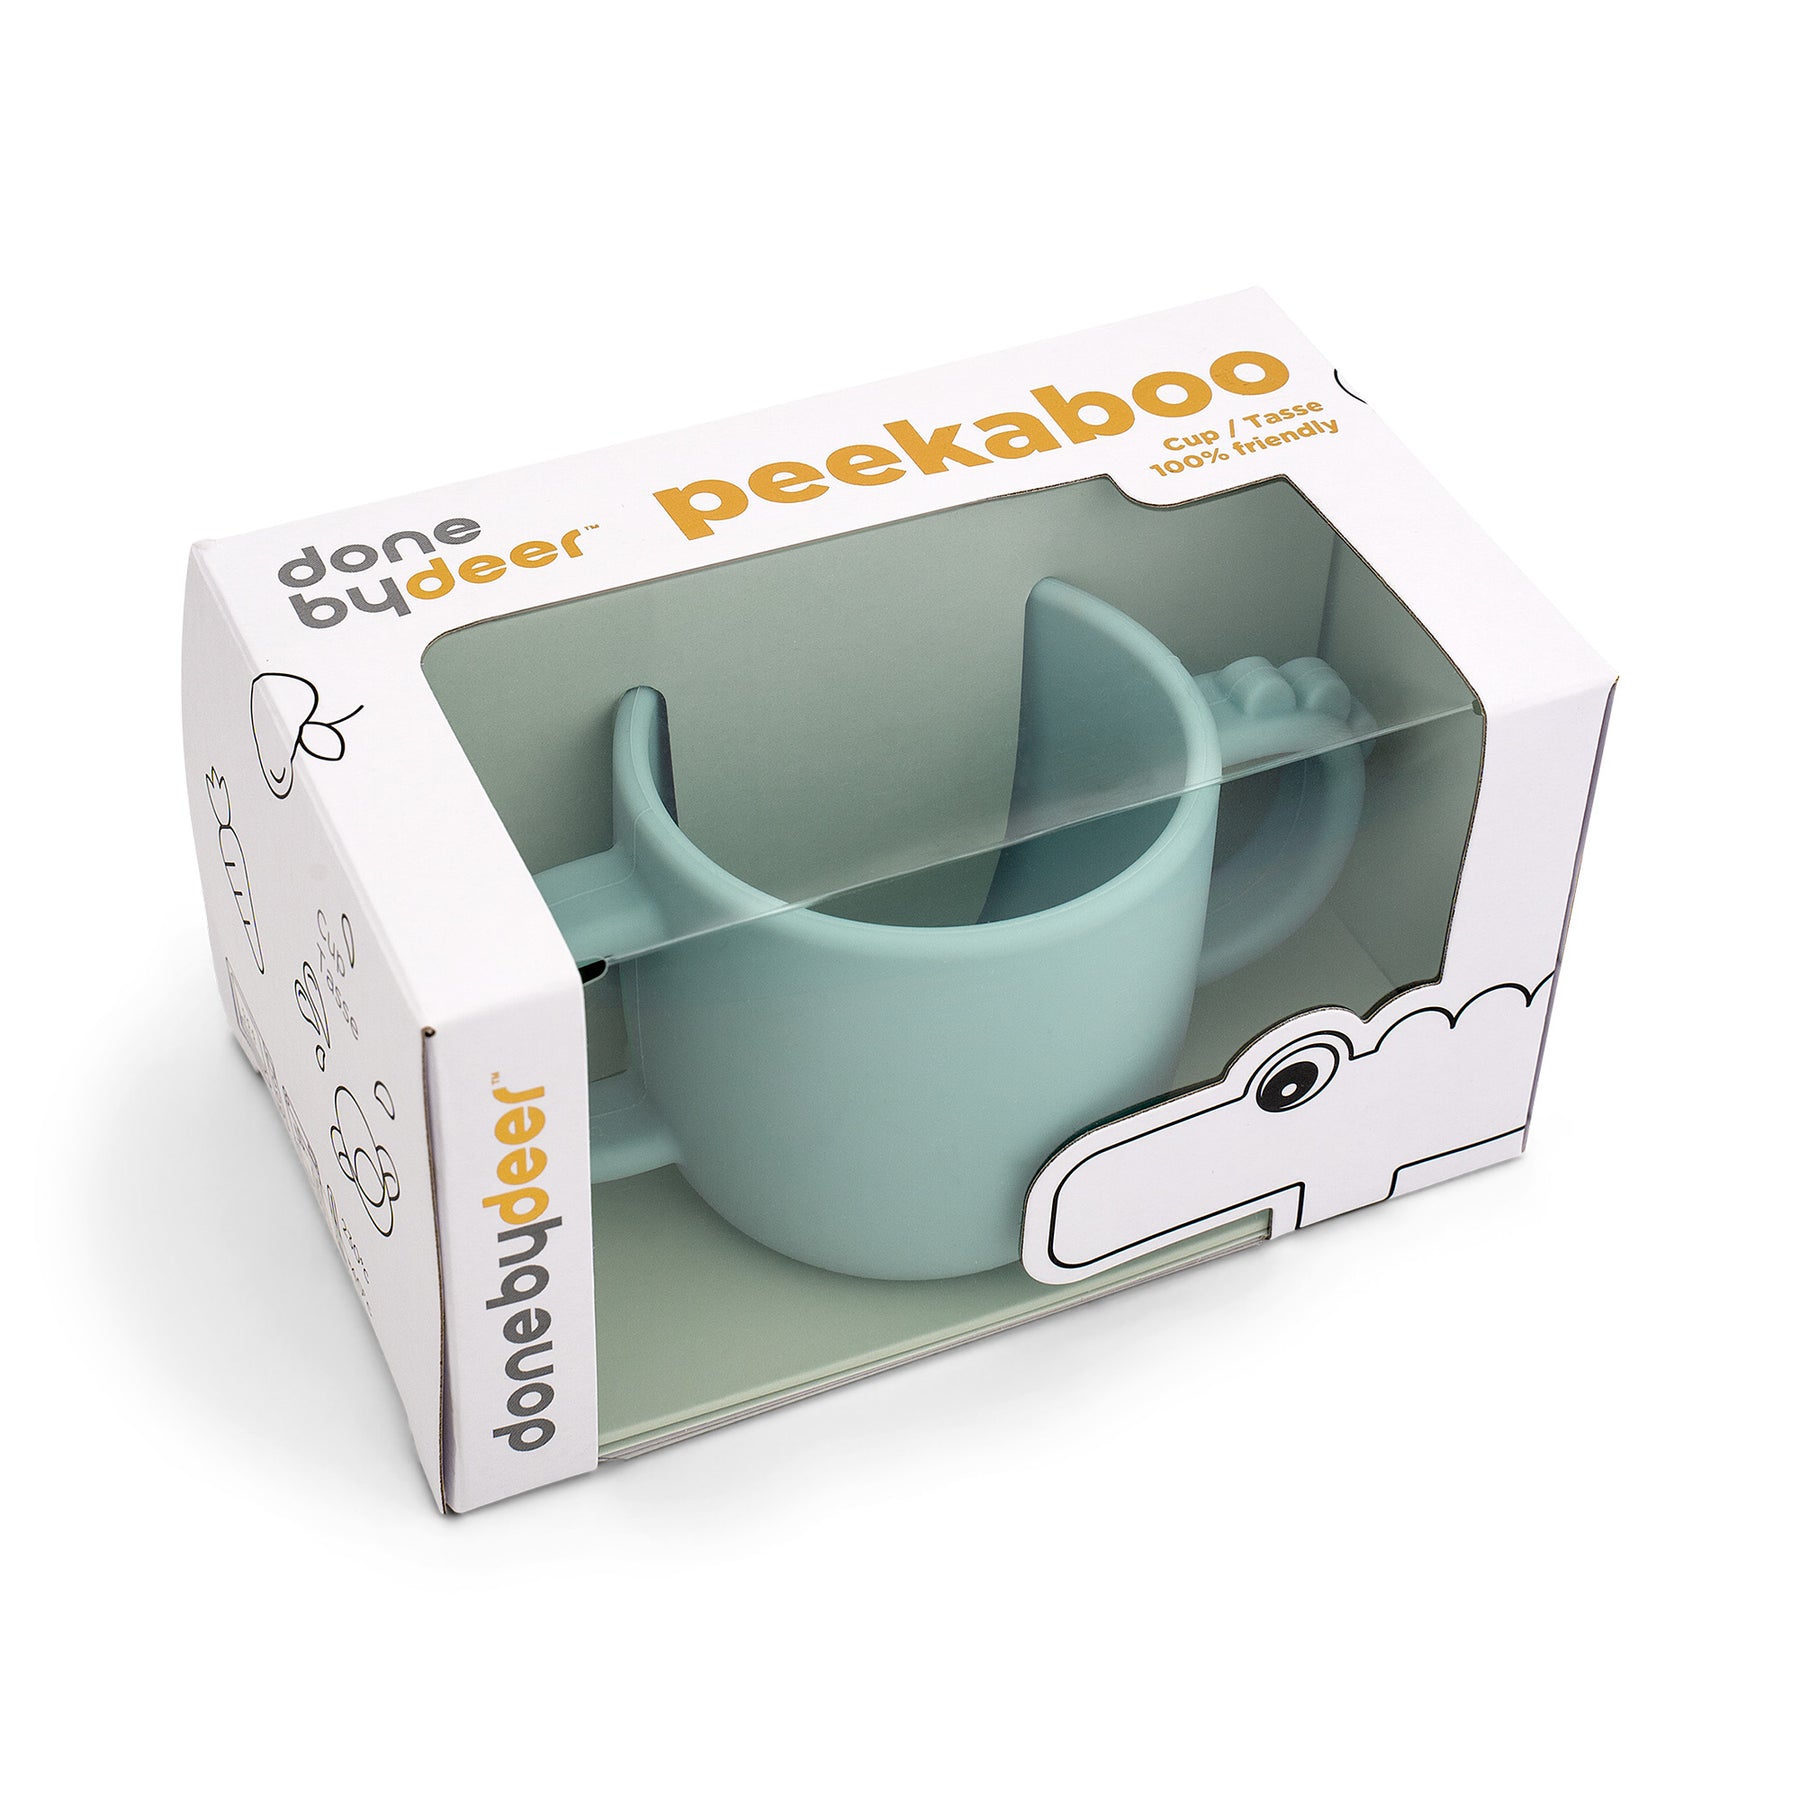 Peekaboo 2-handle cup - Croco - Blue - Packaging